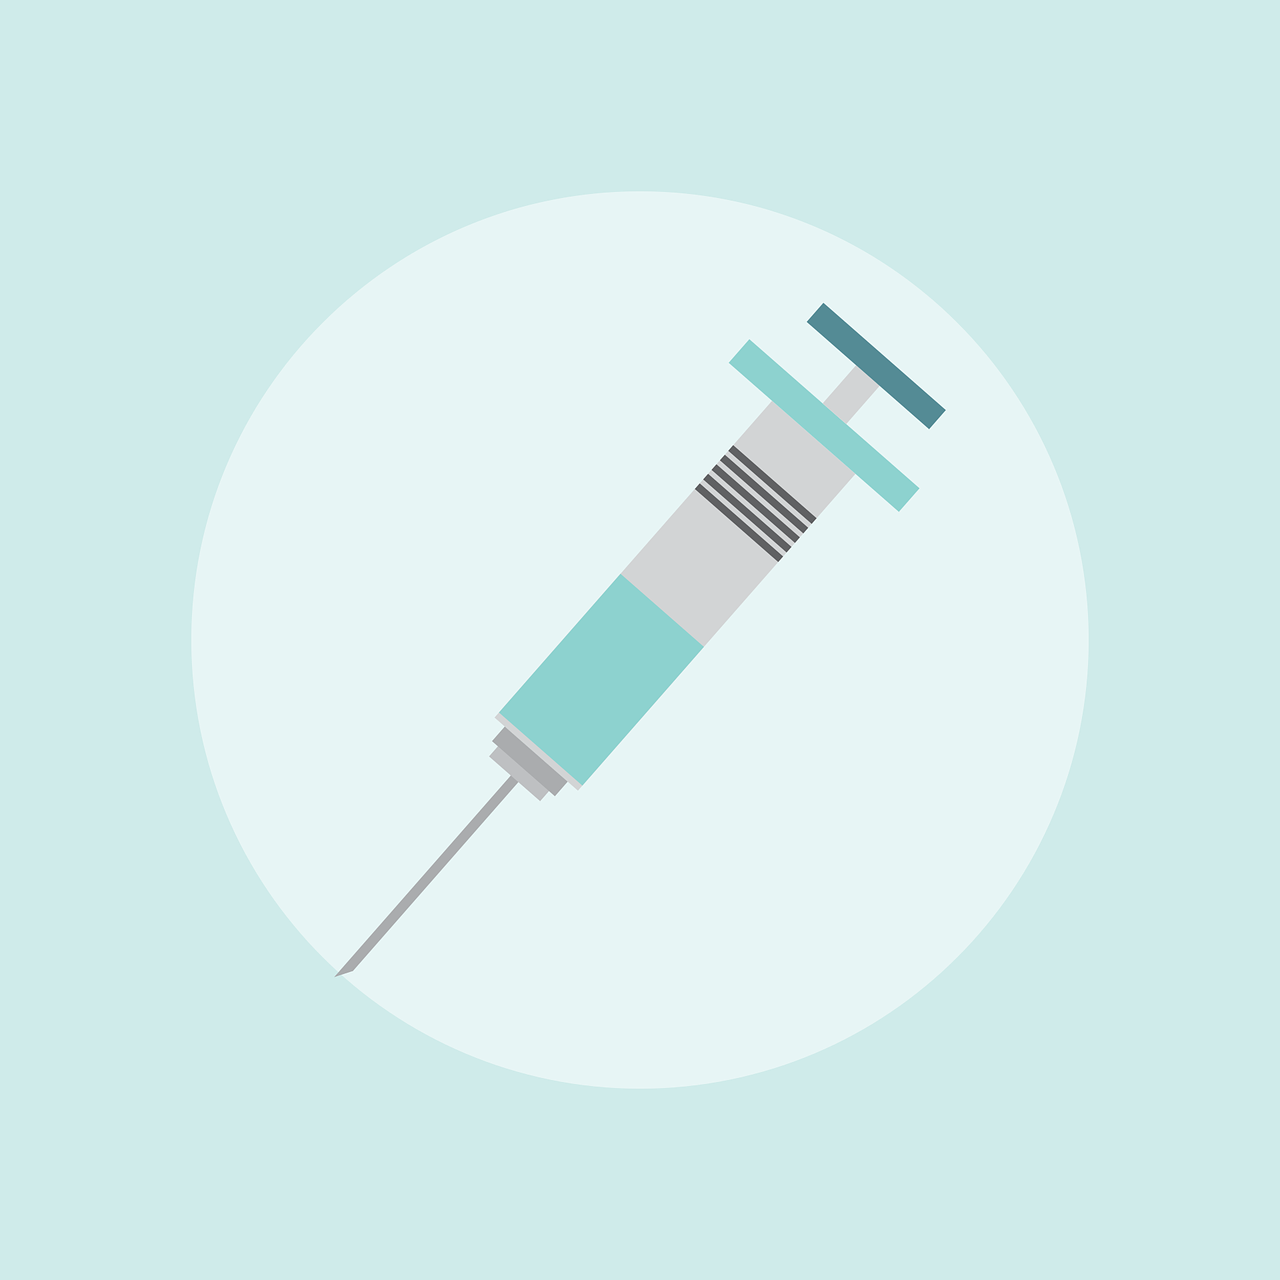 Vaccine rollout in Banbury | Victoria Prentis